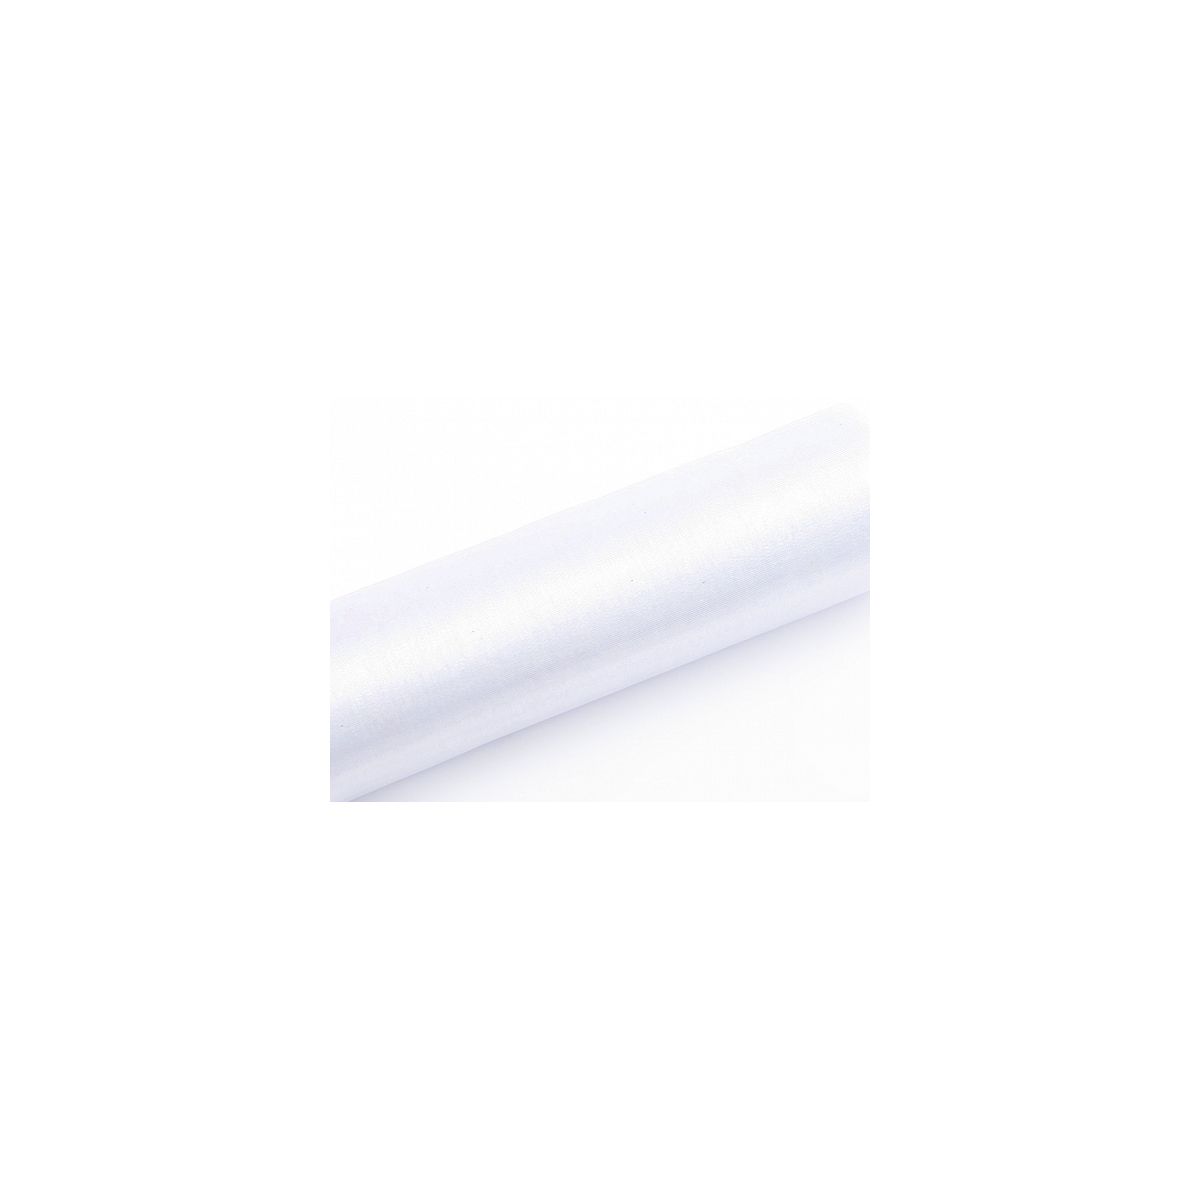 Organza Partydeco Gładka, biały, 0,16 x 9m 150mm biała 9m (ORP16-008)